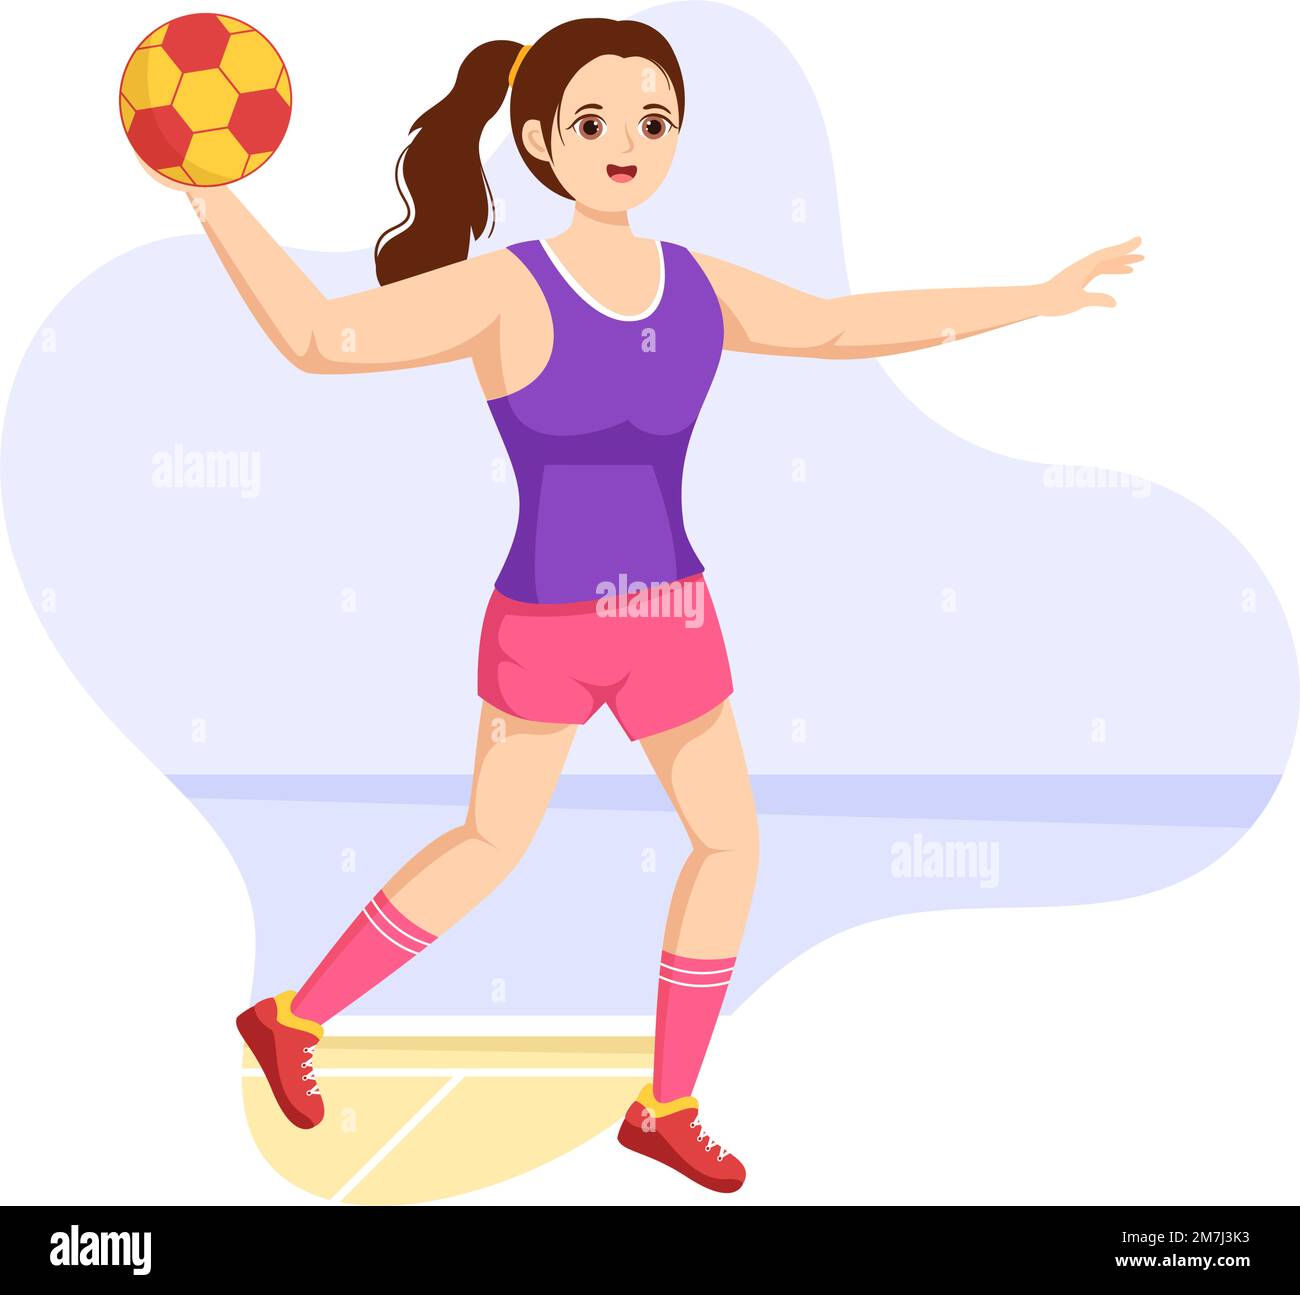 Handball Illustrazione di un giocatore che tocca il pallone con la sua mano e segnando un obiettivo in un modello di disegno della mano del cartoon piatto della competizione sportiva Illustrazione Vettoriale